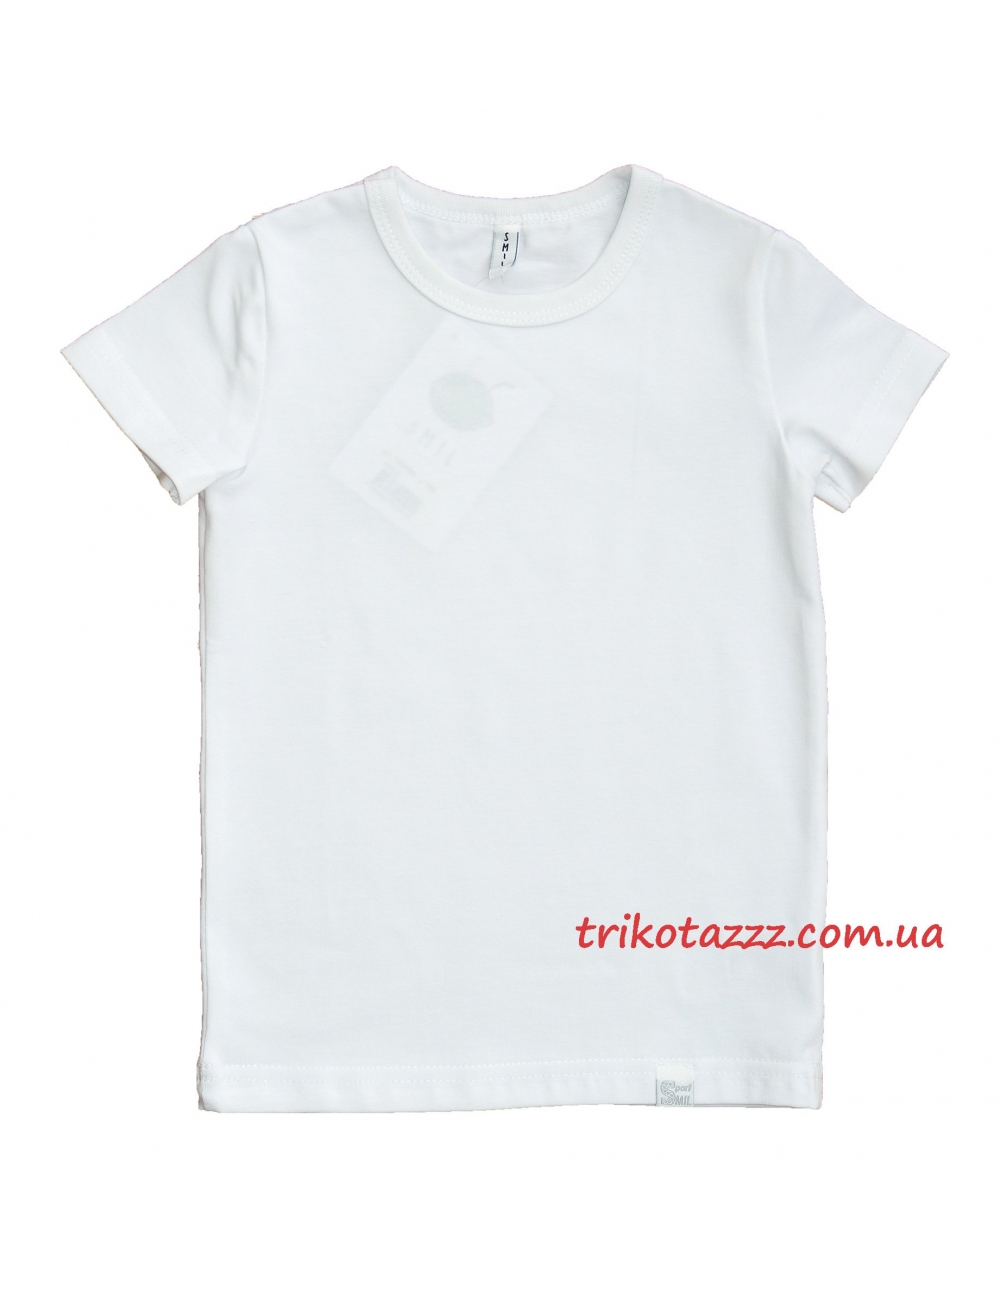 Детская футболка для мальчика белая тм"Смил" спортивная 